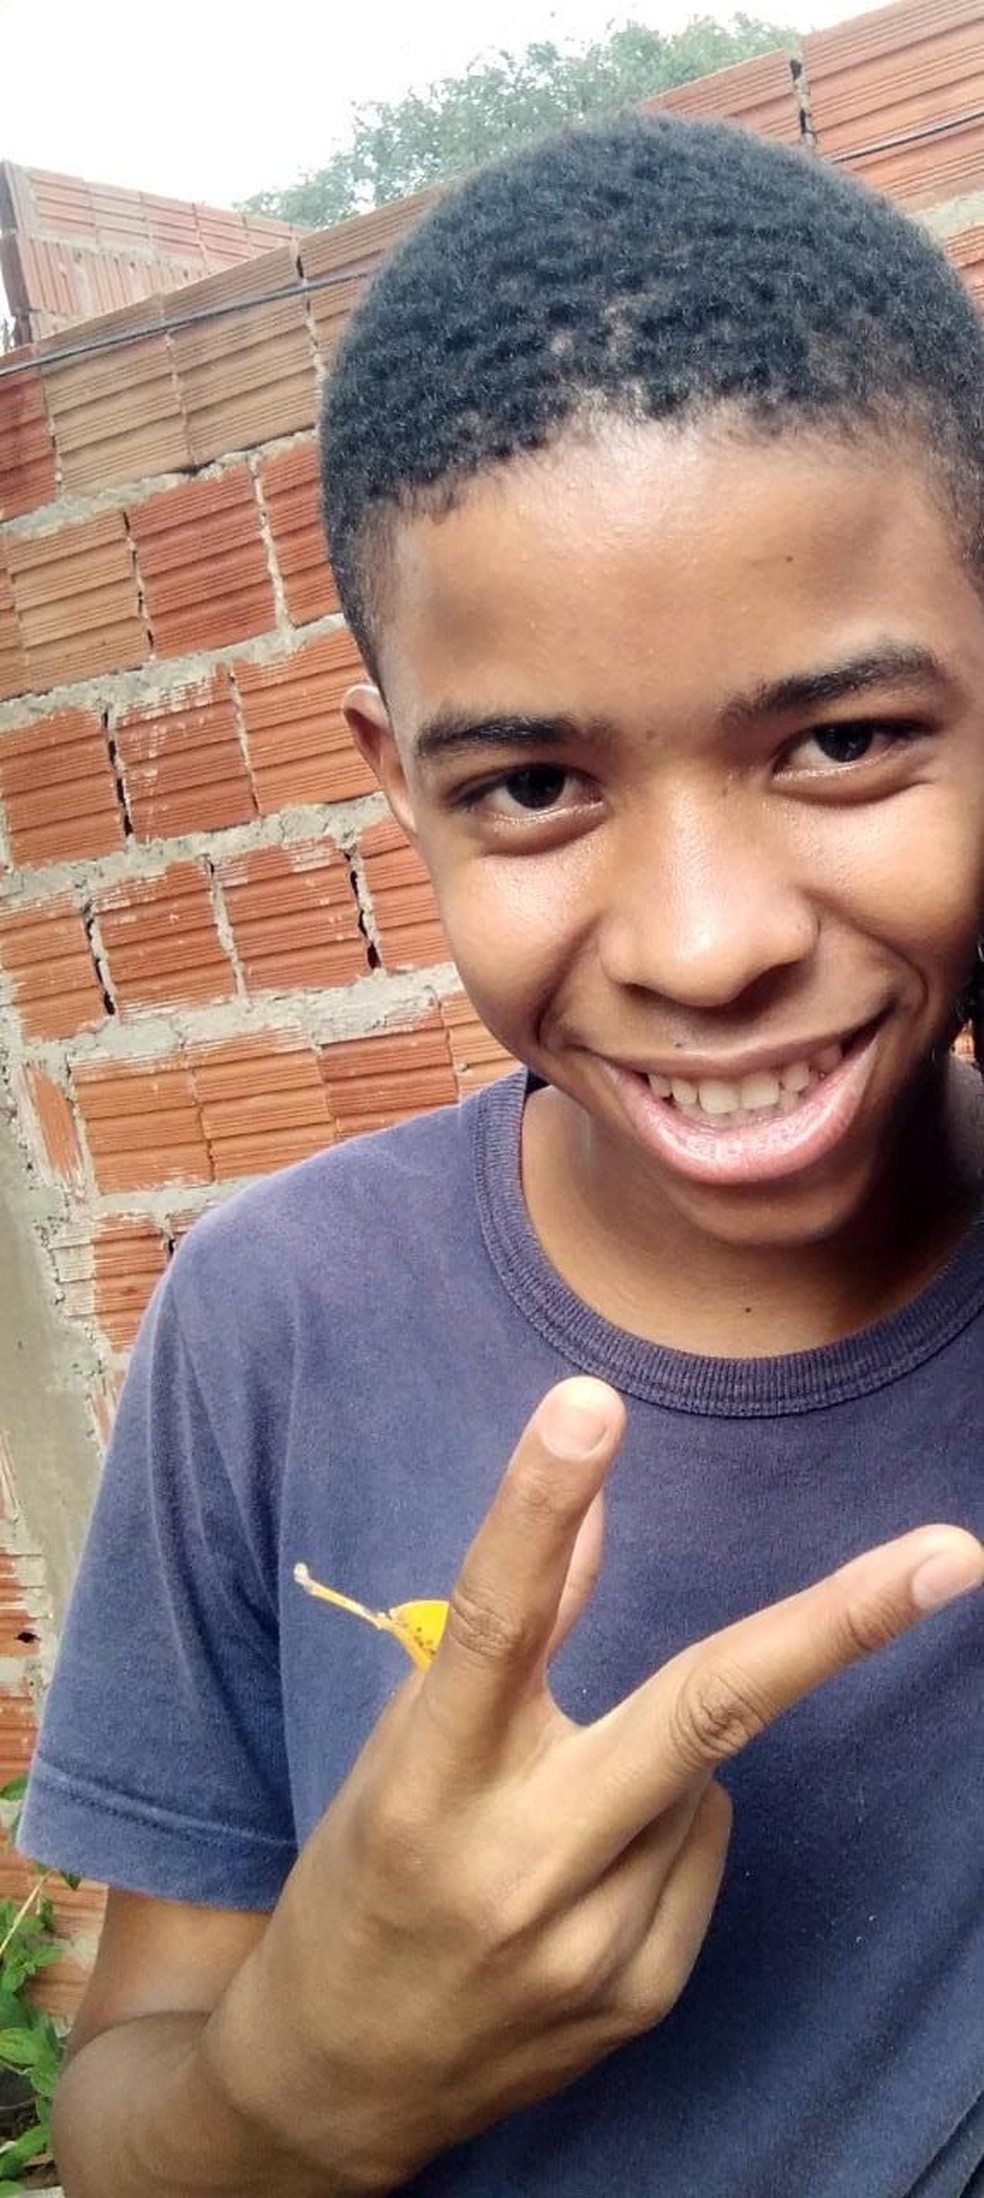 Daniel Hiarle Arruda de Oliveira, de 14 anos, morreu em excursão de escola — Foto: Arquivo pessoal